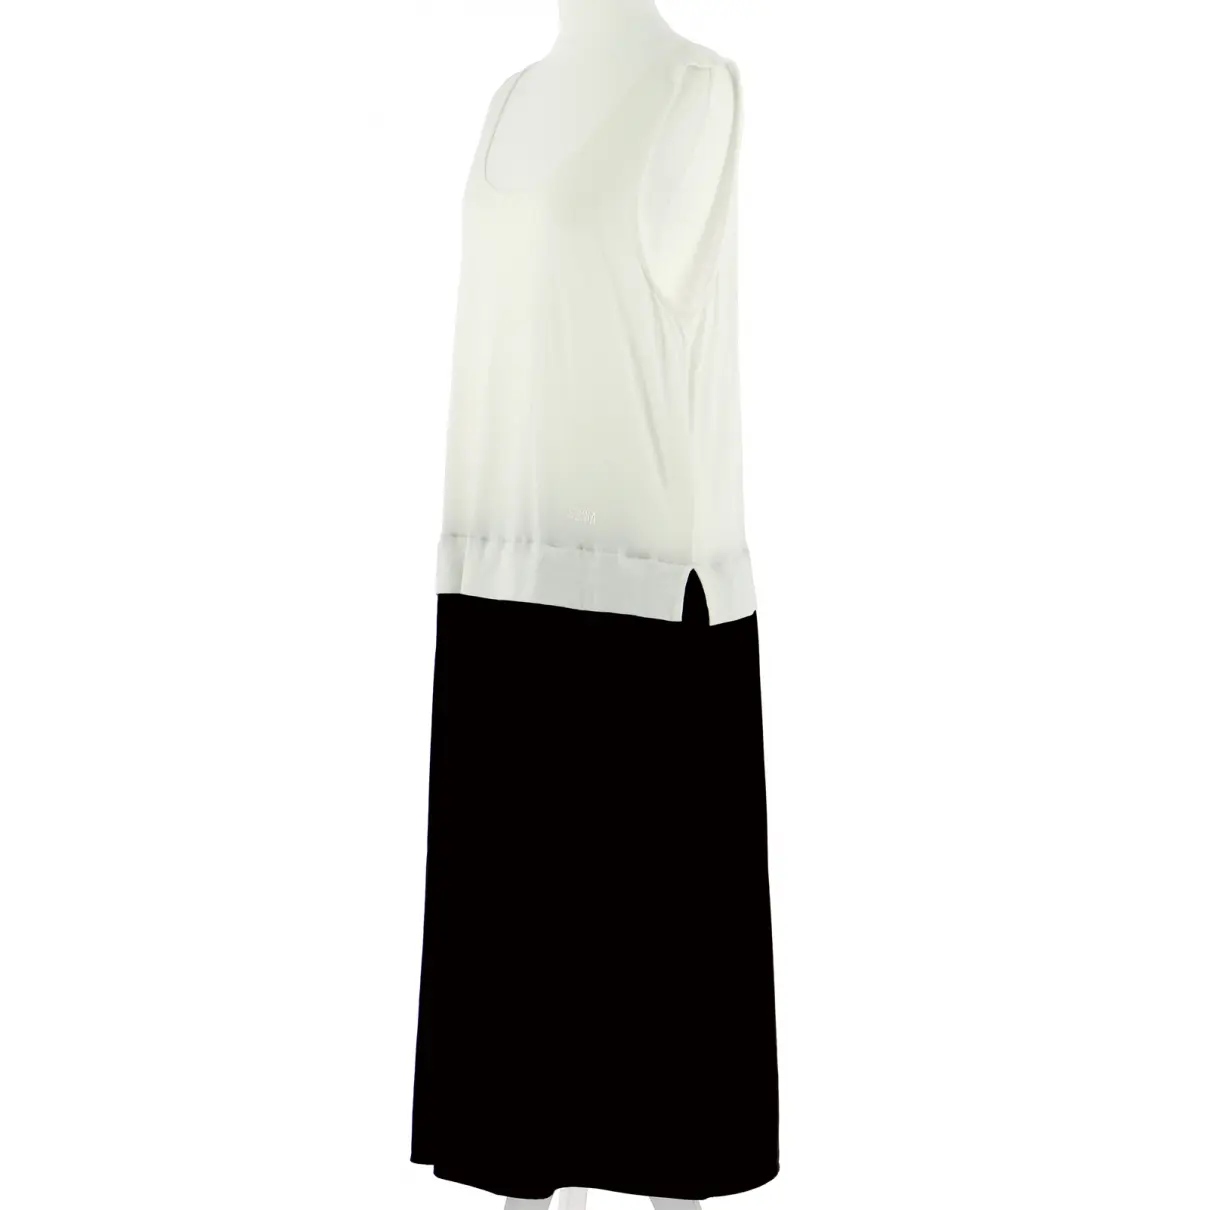 Buy Sonia Rykiel Dress online - Vintage